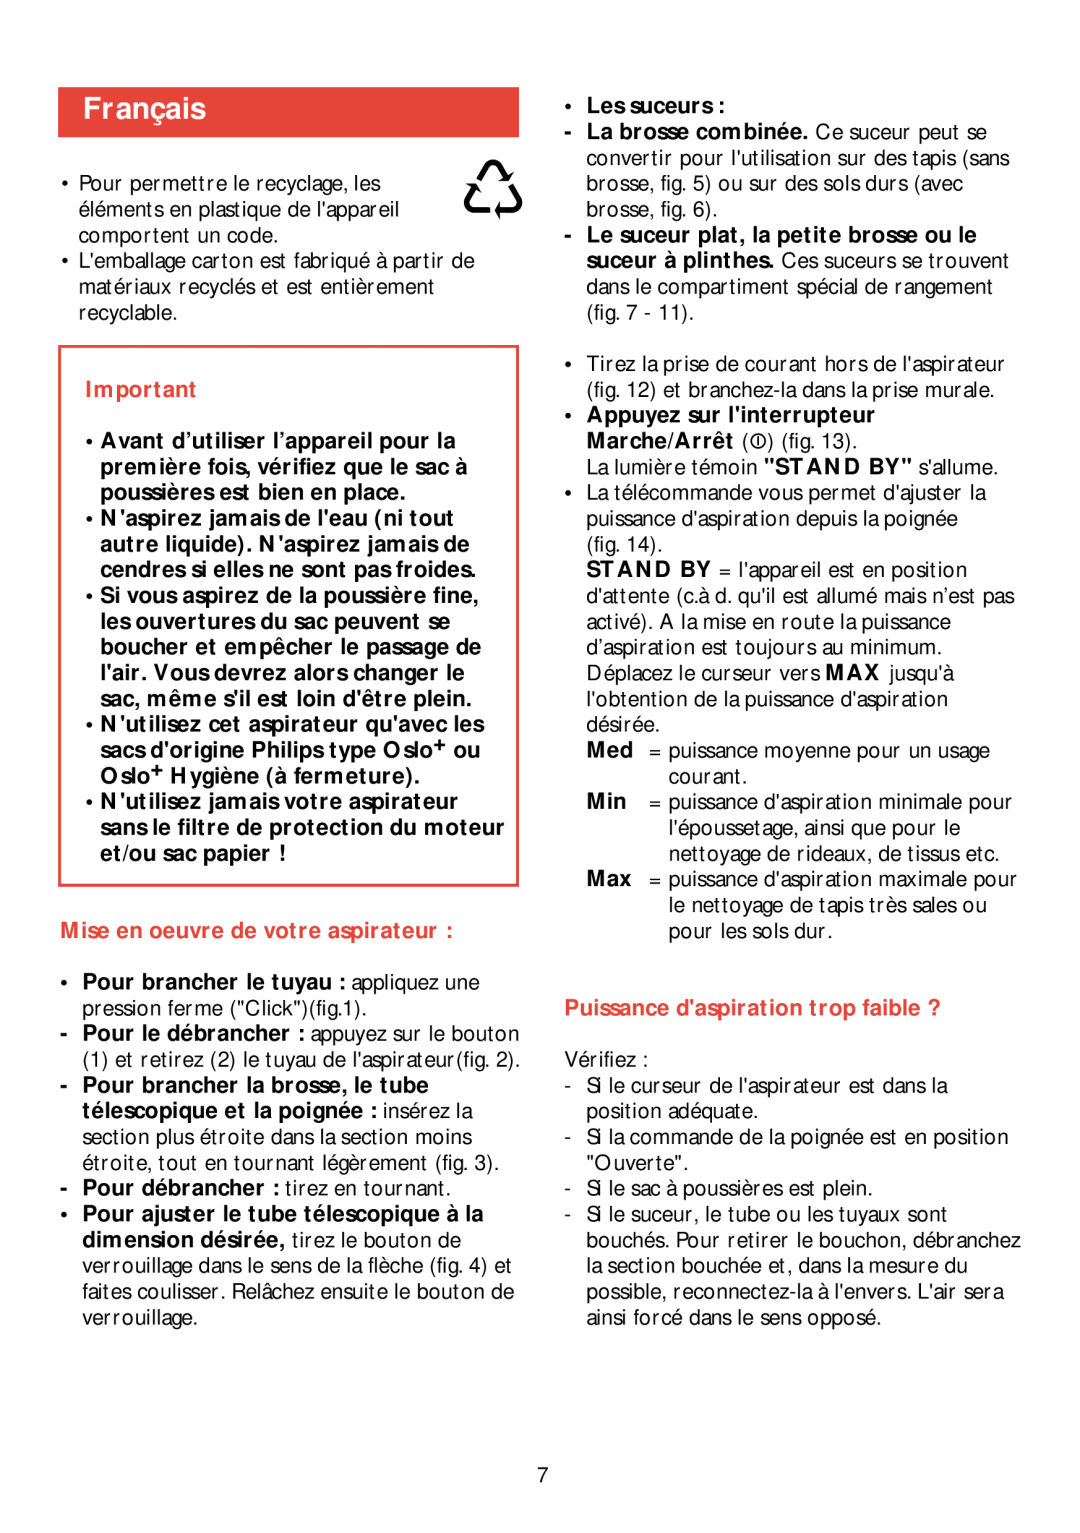 Philips HR 6988 manual Français, Mise en oeuvre de votre aspirateur, Puissance daspiration trop faible ? 